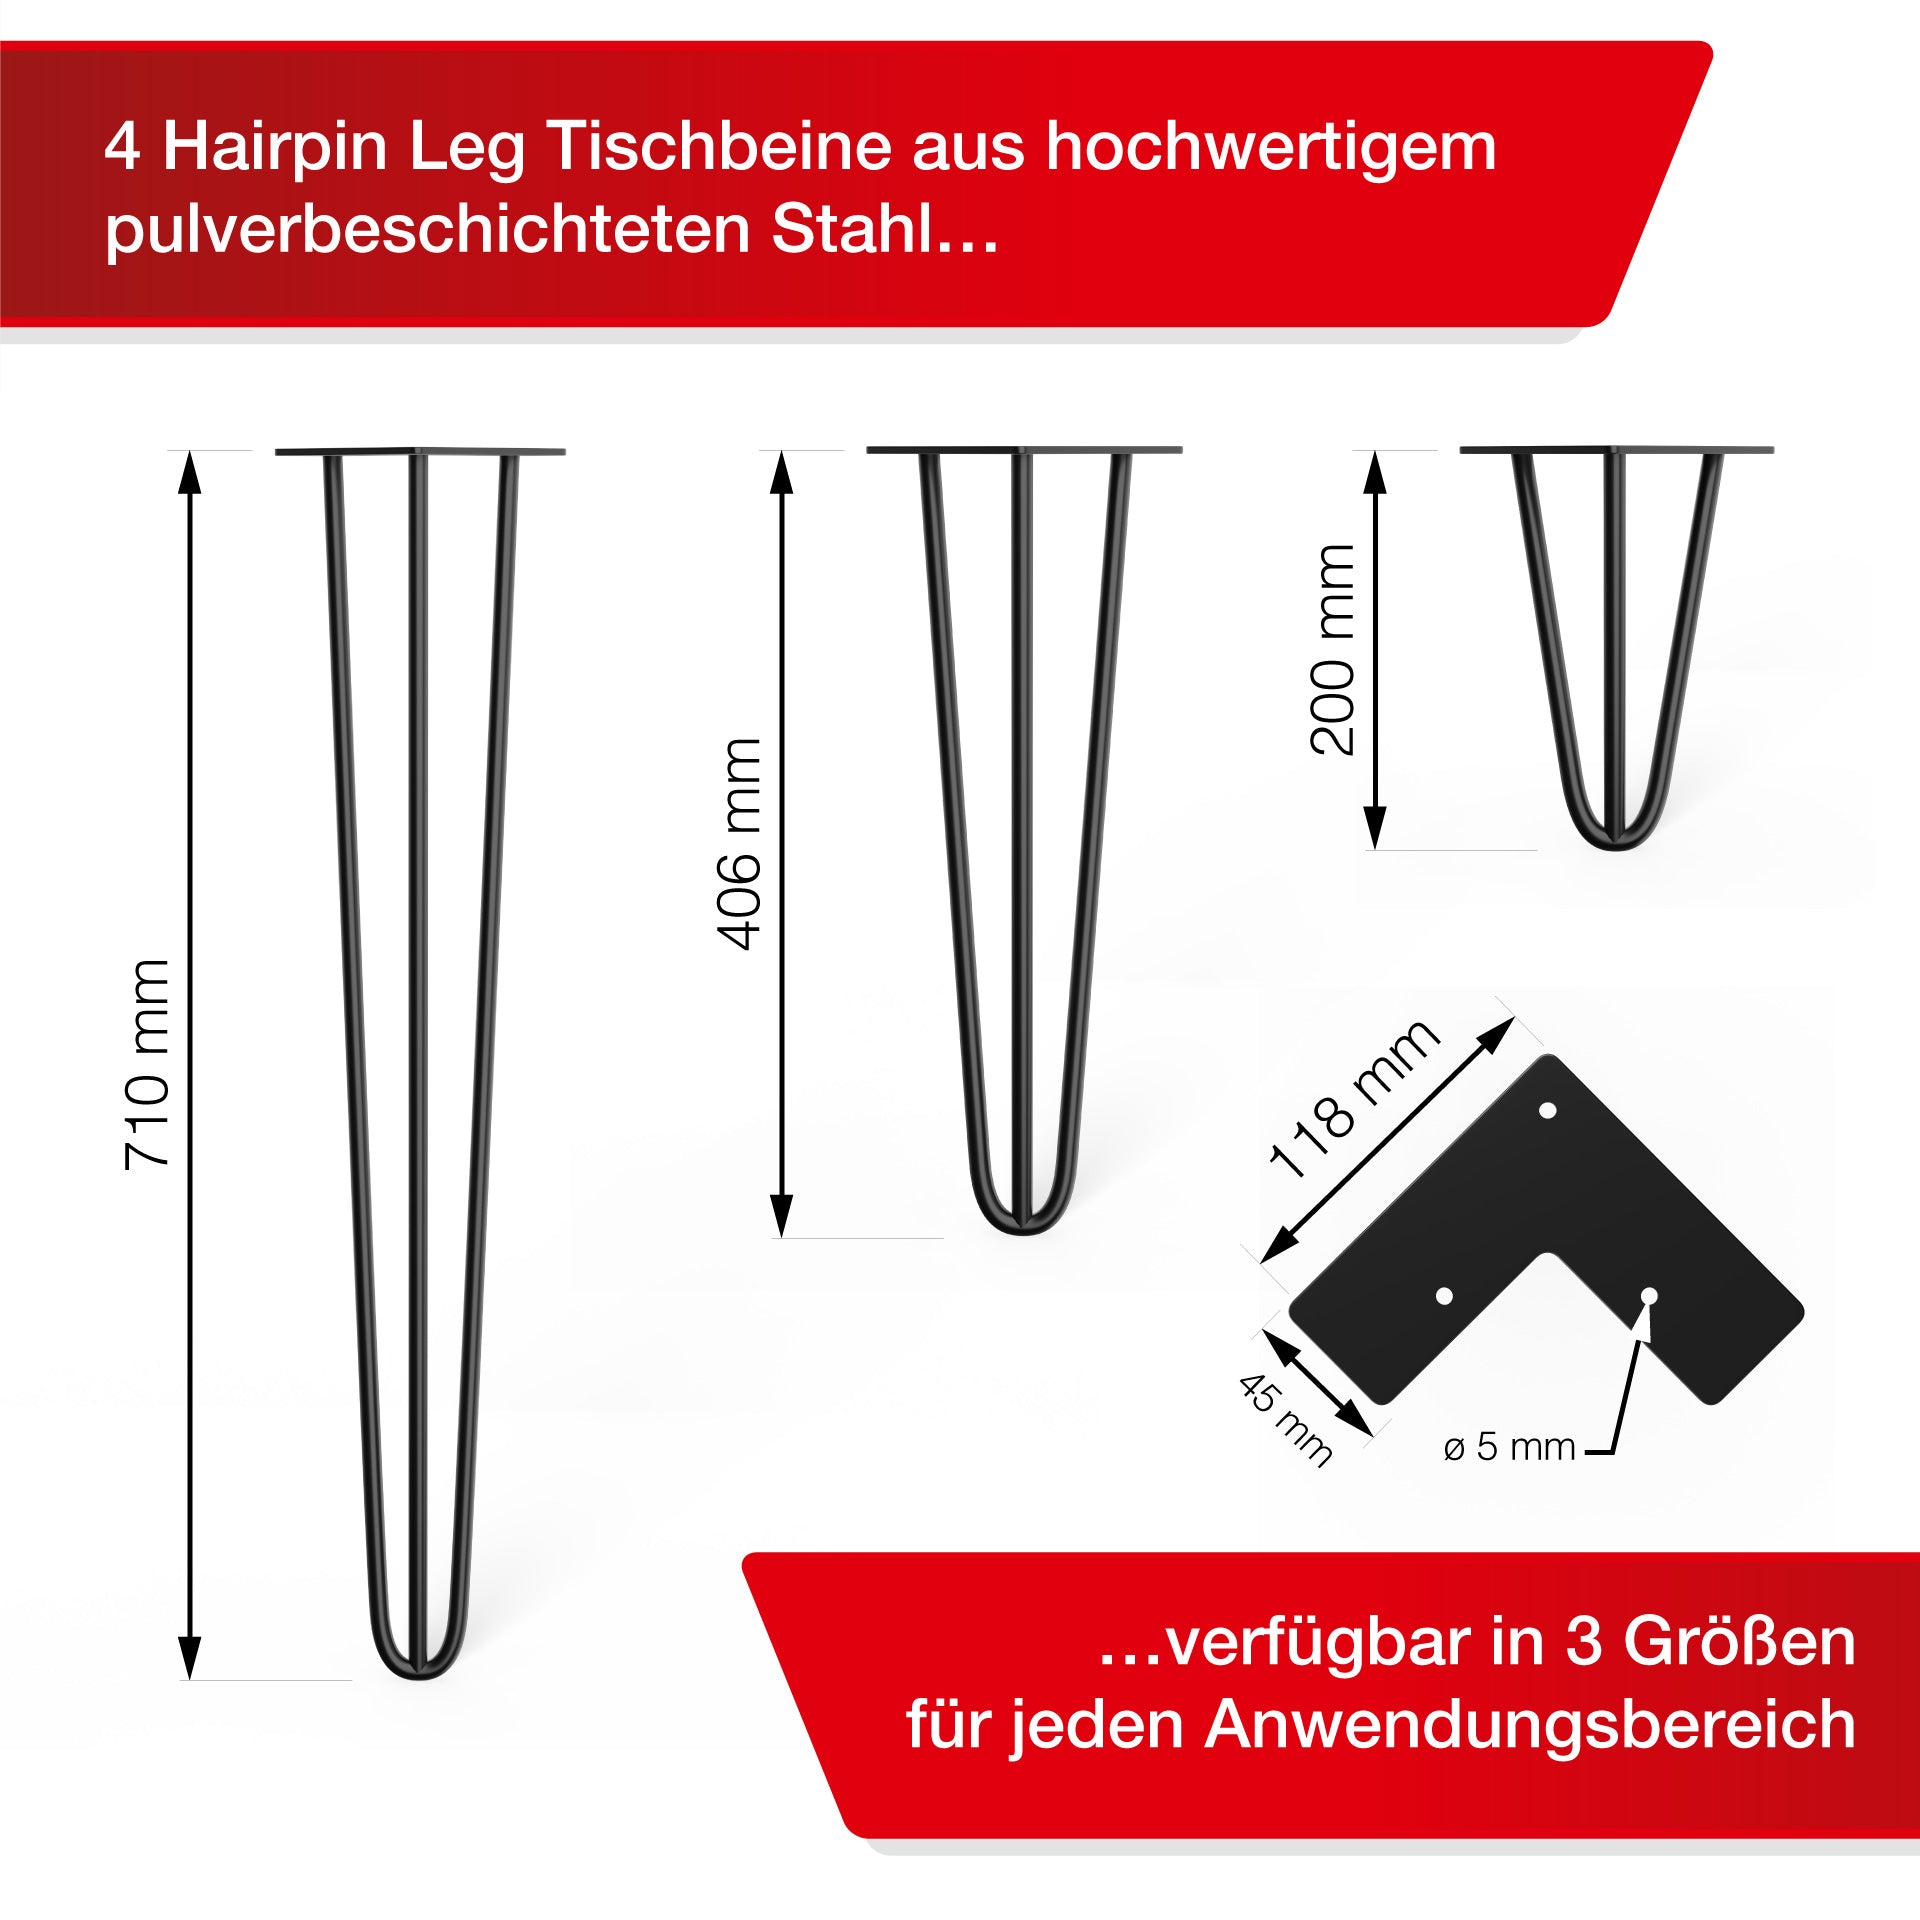 LouMaxx Tischbeine Metall Schwarz – 4 Stück – 200mm Höhe - 10mm Rundstahl, Hochwertiges 3-Stangen Tischbein für jeden Einsatzzweck inkl. Schrauben und Bodenschoner